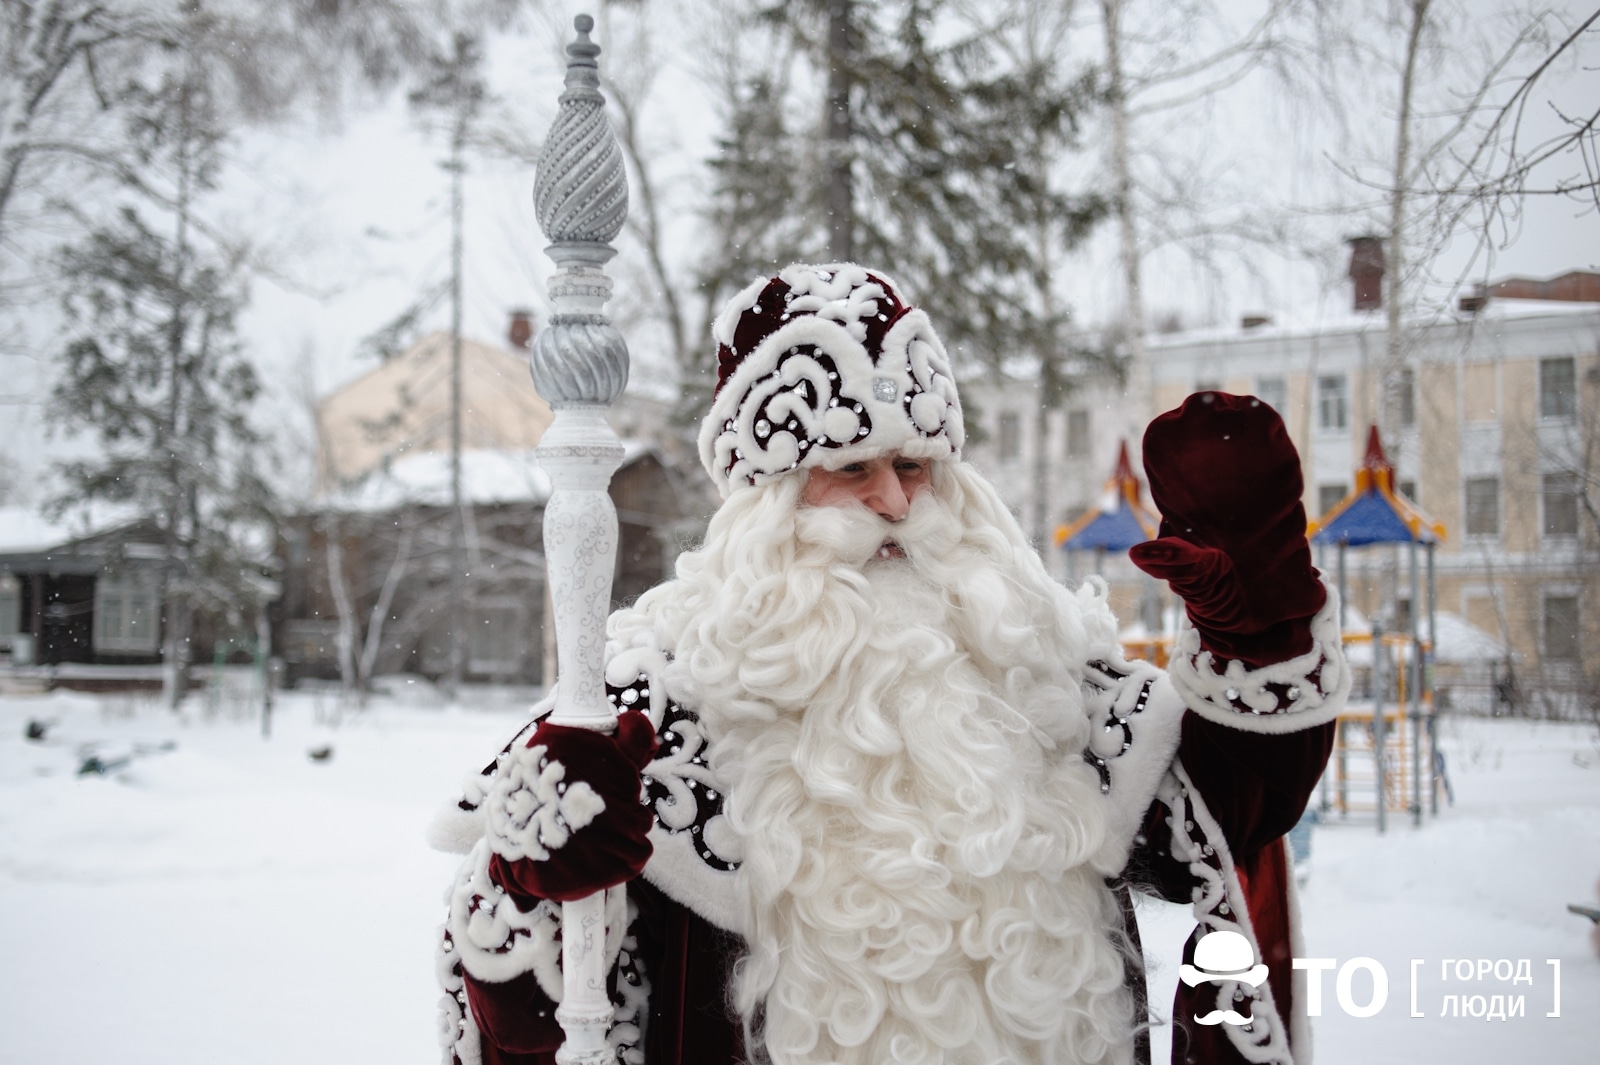 Новый год ❄, Томские новости, почта письмо дед мороз томск новости интересное В Томске появился почтовый ящик для писем Деду Морозу